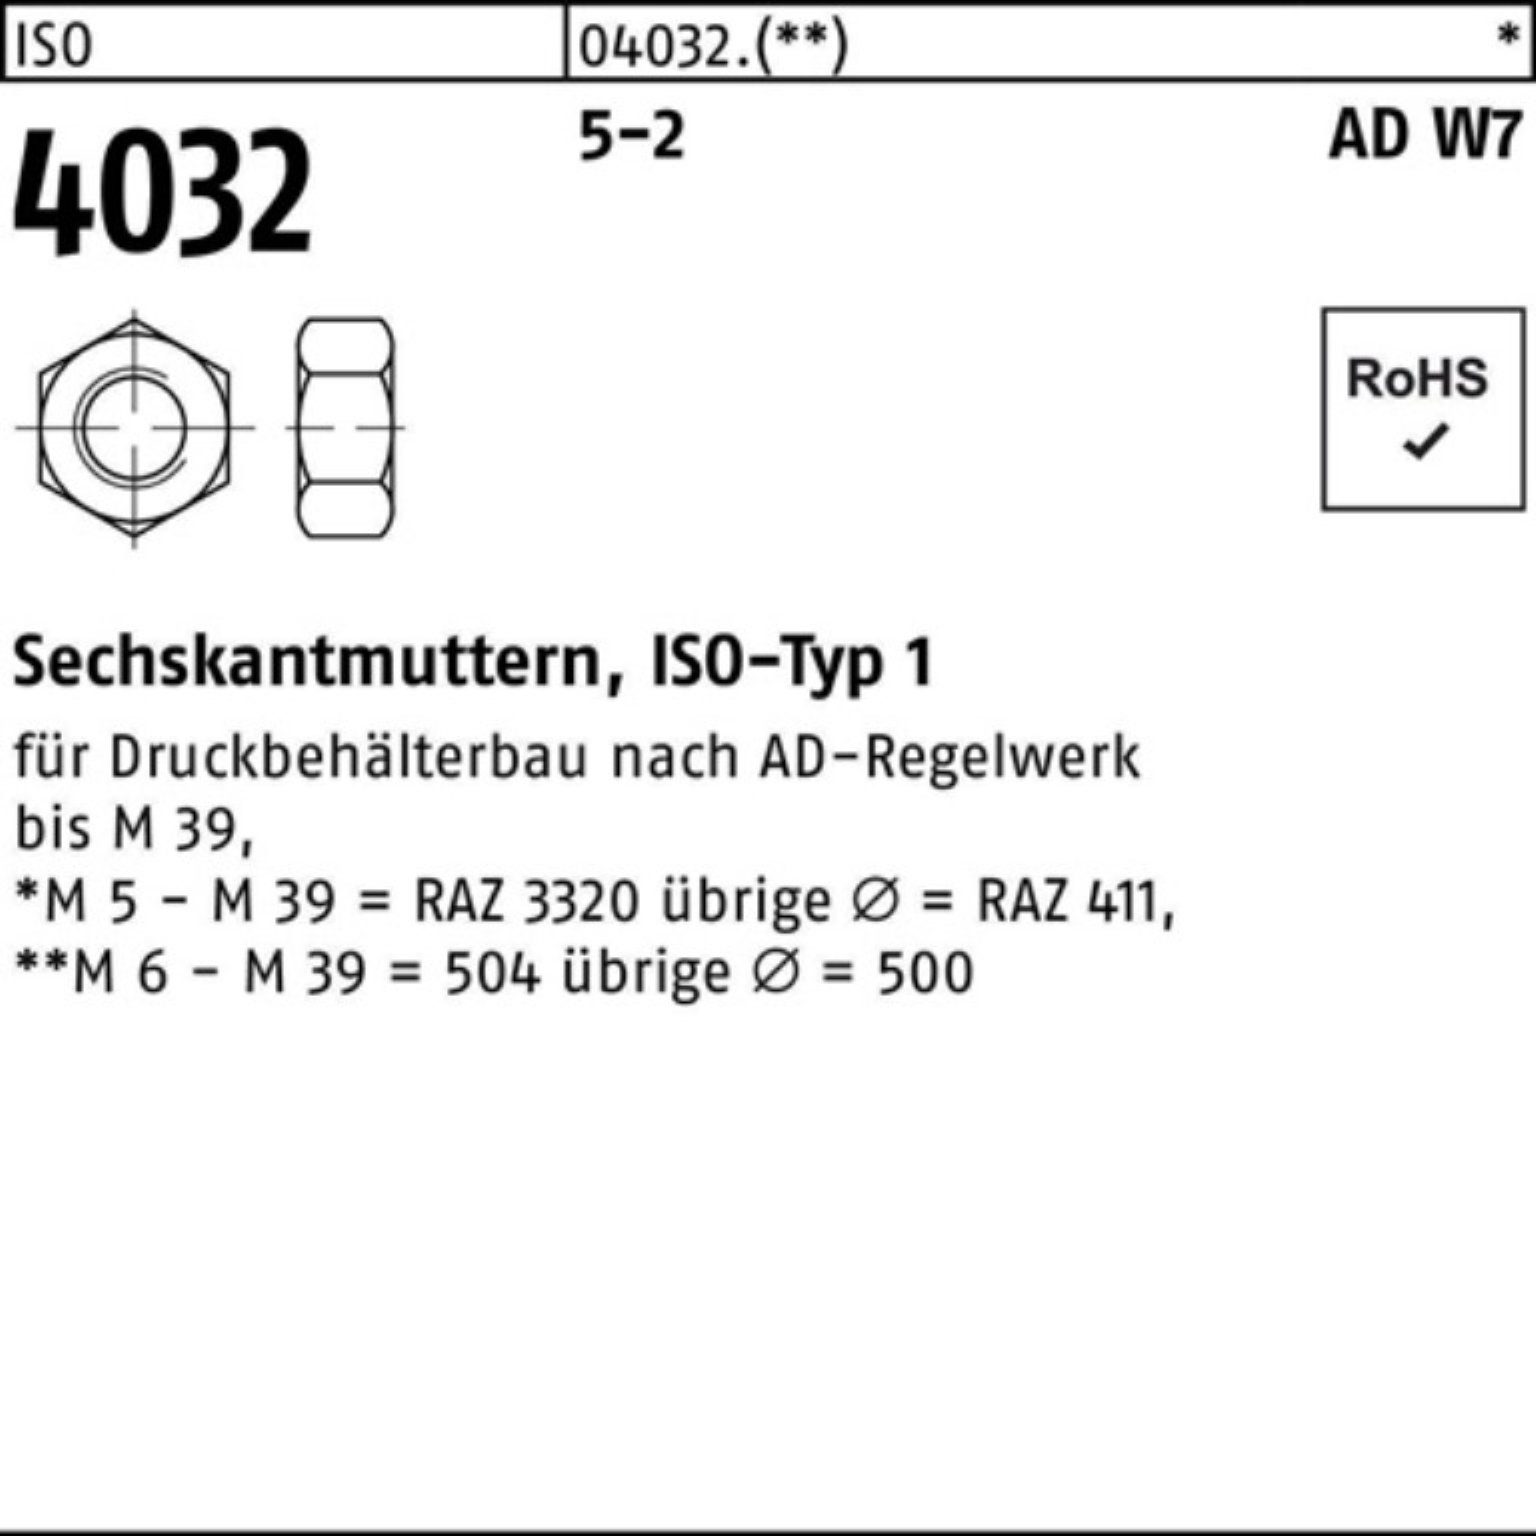 Bufab Muttern 100er Pack Sechskantmutter 4032 Stück 5-2 M8 W7 ISO ISO 4032 AD 100 5